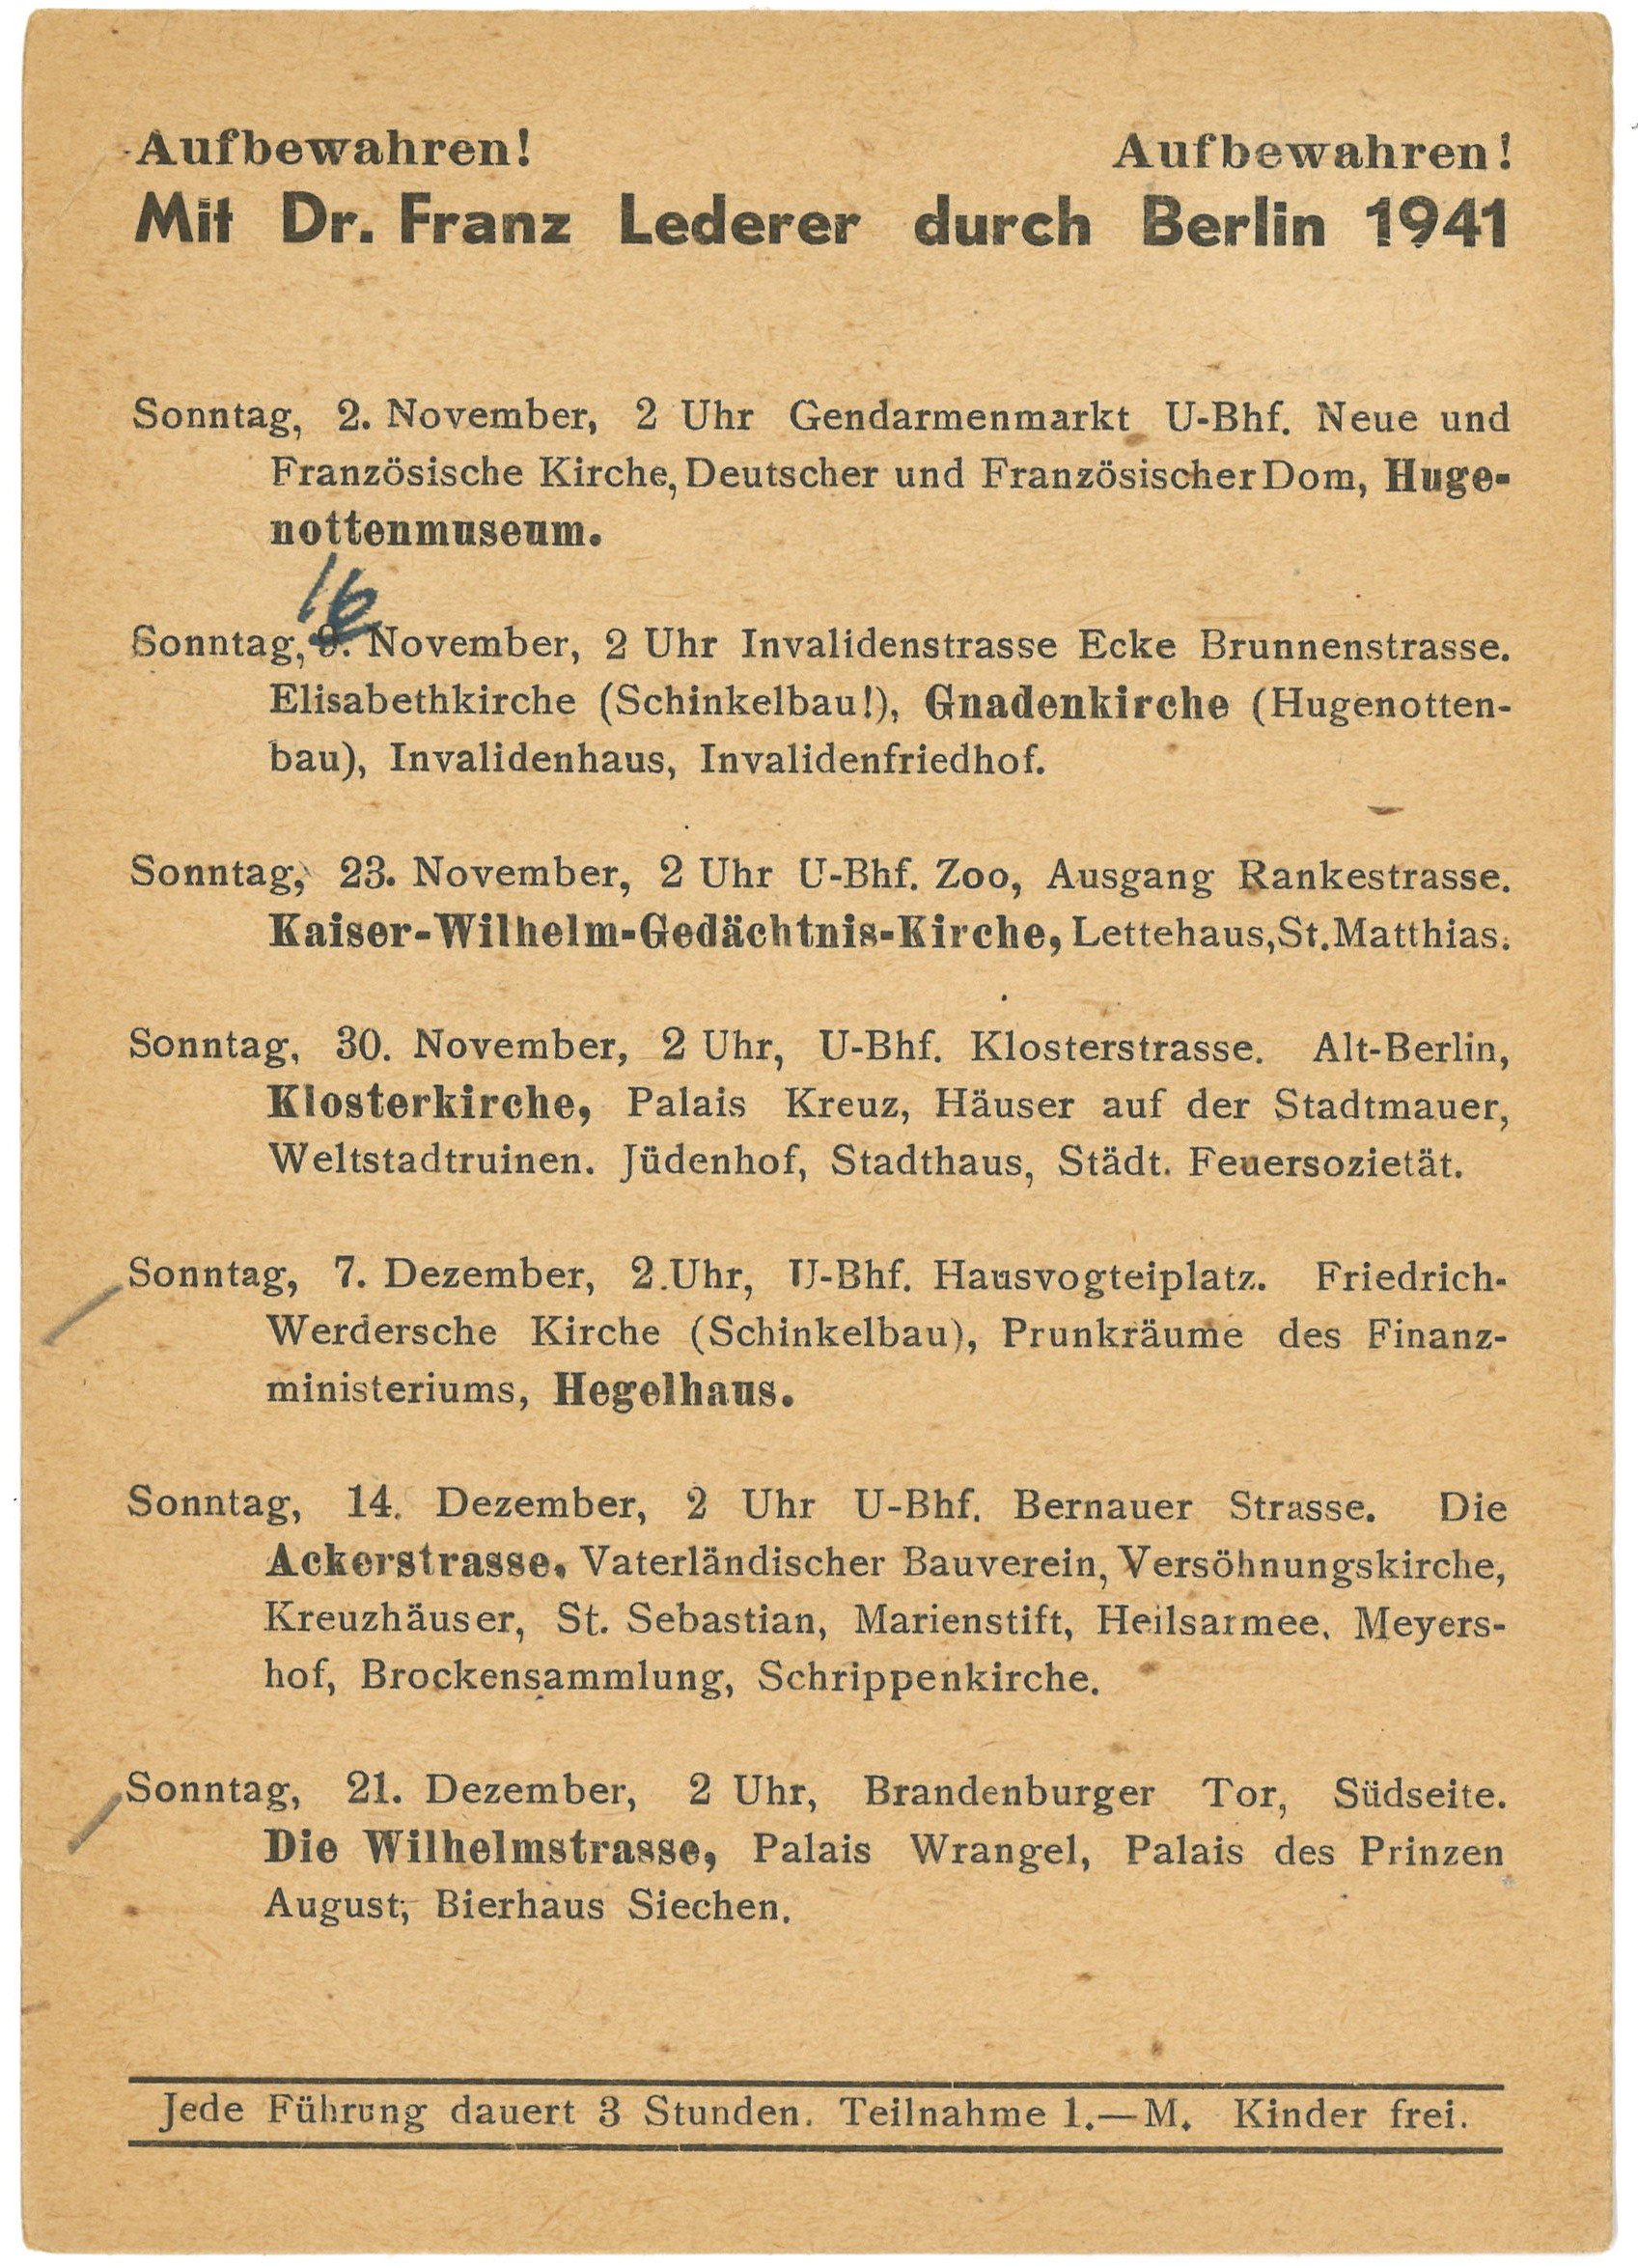 Programm der Berlin-Führungen von Dr. Franz Lederer für November bis Dezember 1941 (Landesgeschichtliche Vereinigung für die Mark Brandenburg e.V., Archiv CC BY)